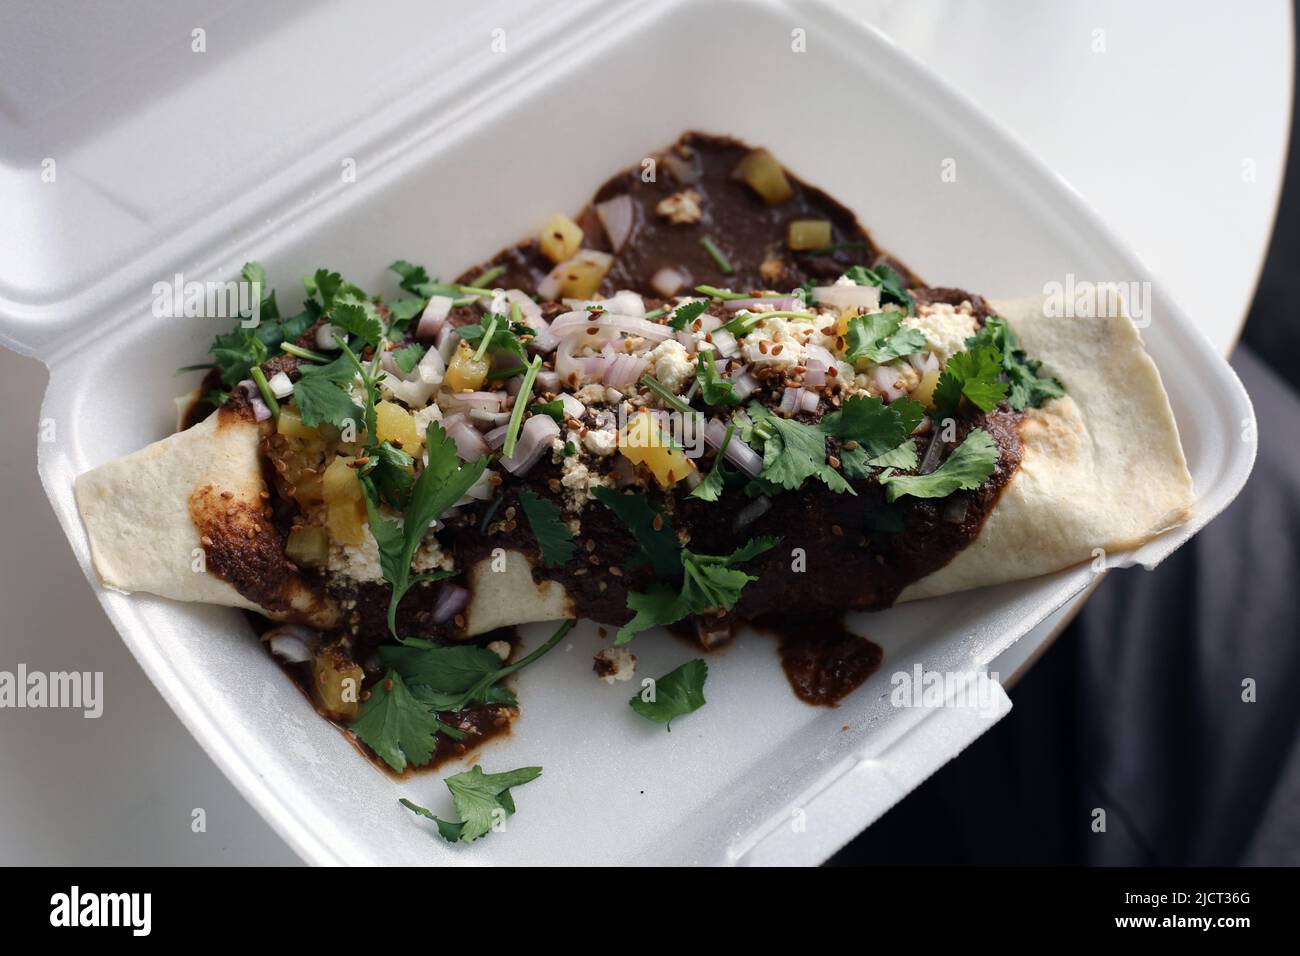 Mexikanische Carnitas enchilada aka Meat enchilada - ein Wrap gefüllt mit Pulled Schweinefleisch, Rise, Bohnen und Gemüse gekrönt mit Gewürzmaulsauce, Gemüse etc. Stockfoto